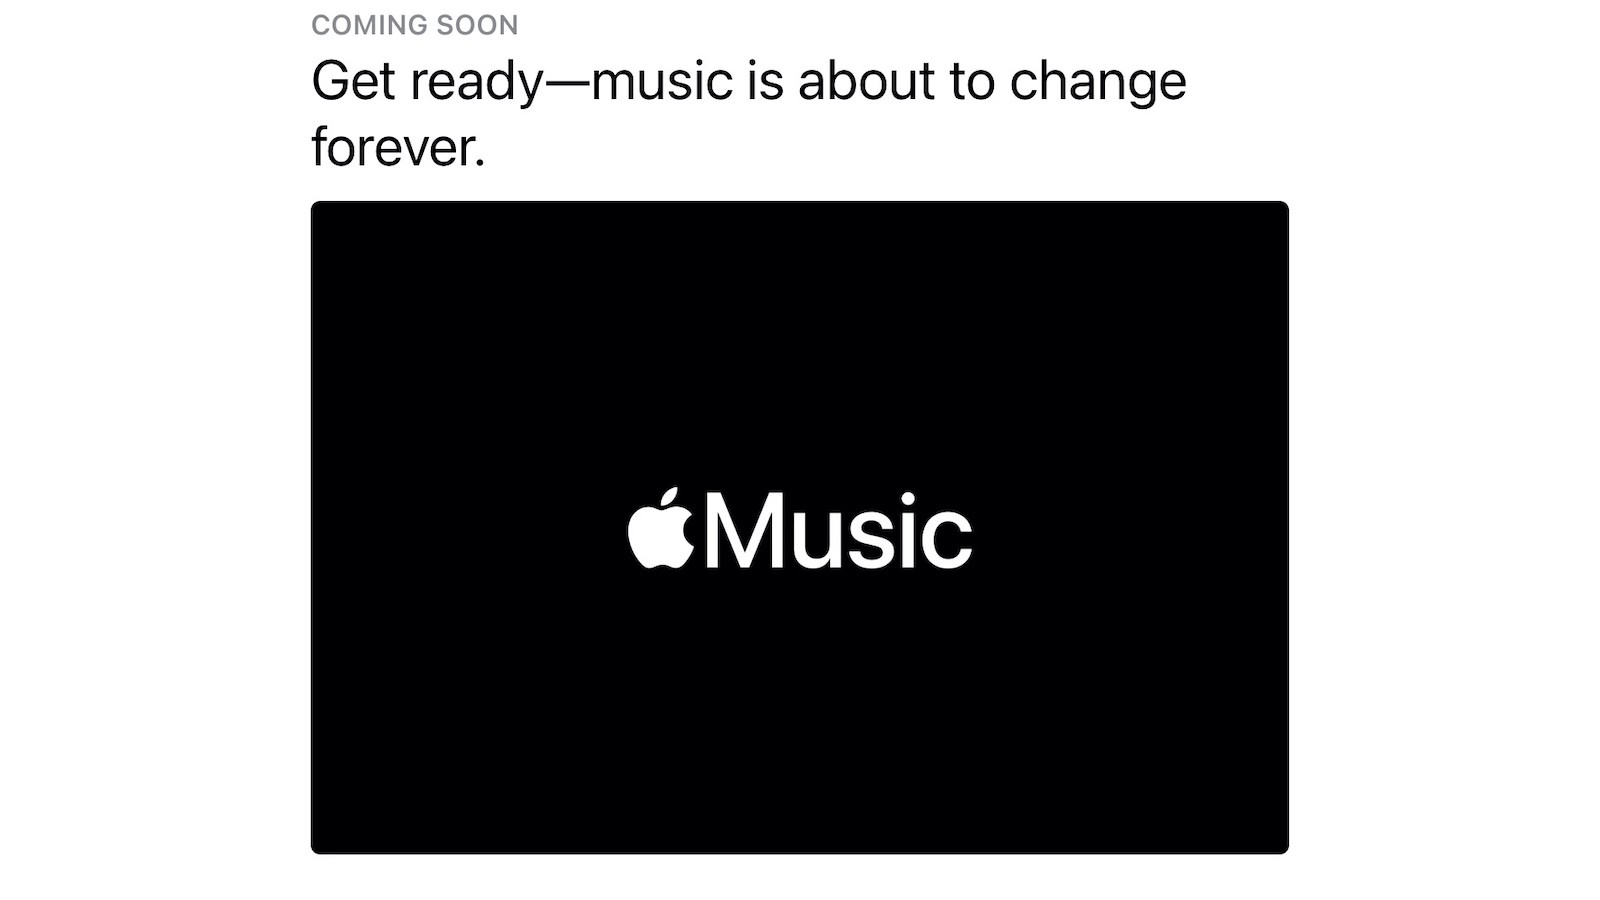 蘋果預告「音樂即將永遠改變」HiFi 高音質+AirPods 空間音訊